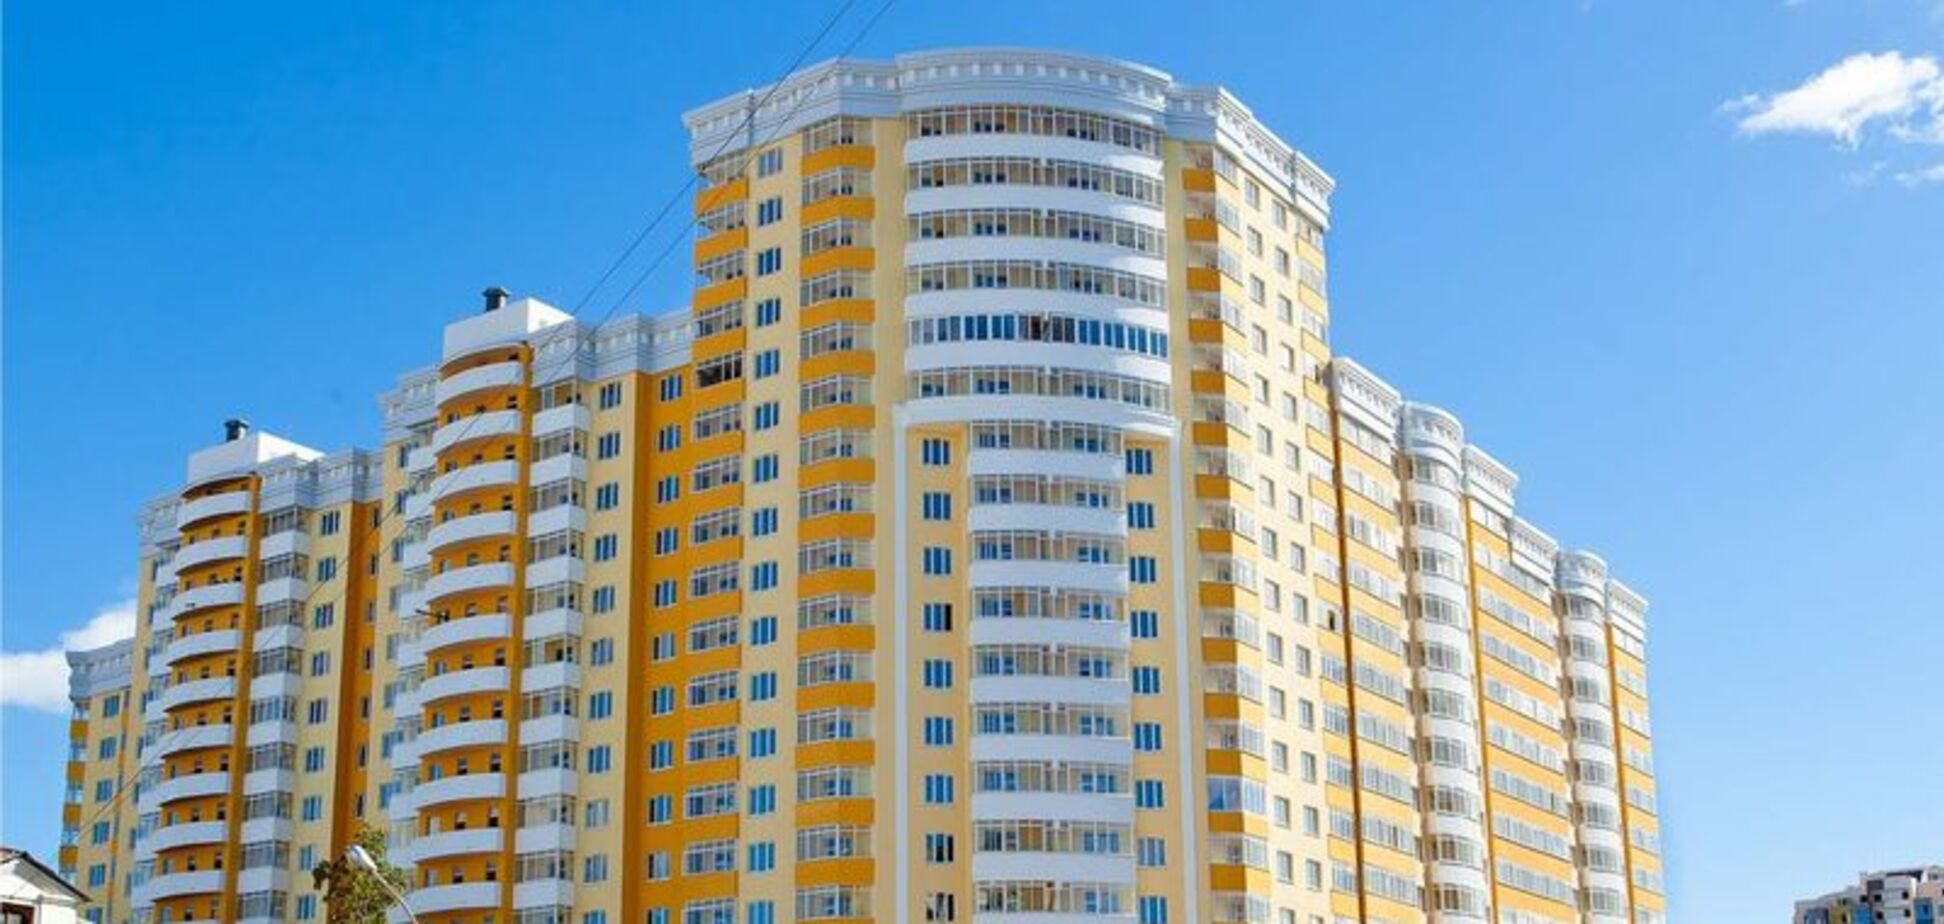 Цены на недвижимость в Украине: появился прогноз на ближайшие годы